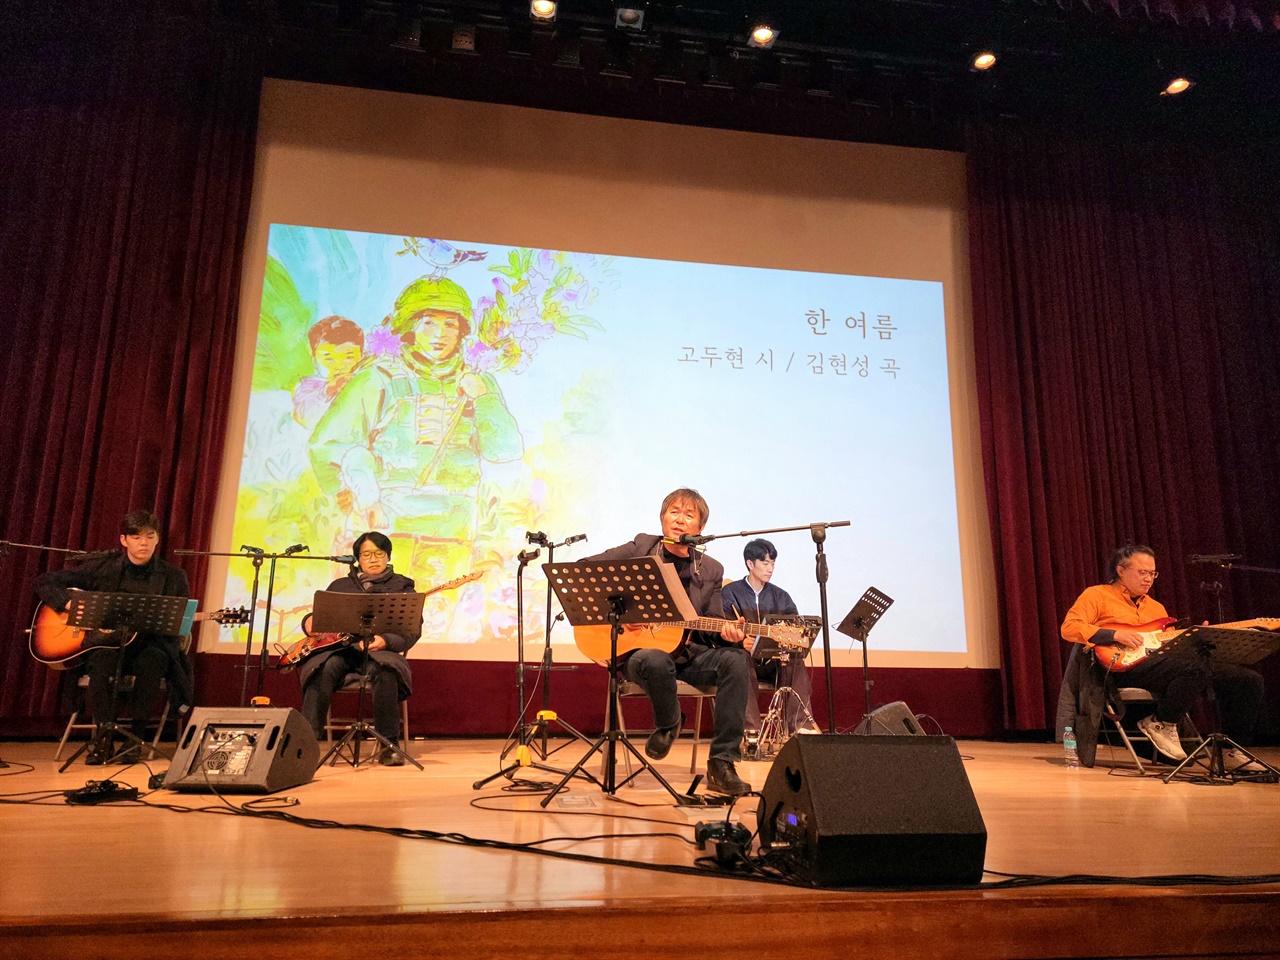  공연 시작 전 리허설 하는 김현성과 밴드. 가운데 기타를 치는 이가 김현성, 맨 왼쪽에서 기타를 치는 이는 그의 아들인 김가을이다